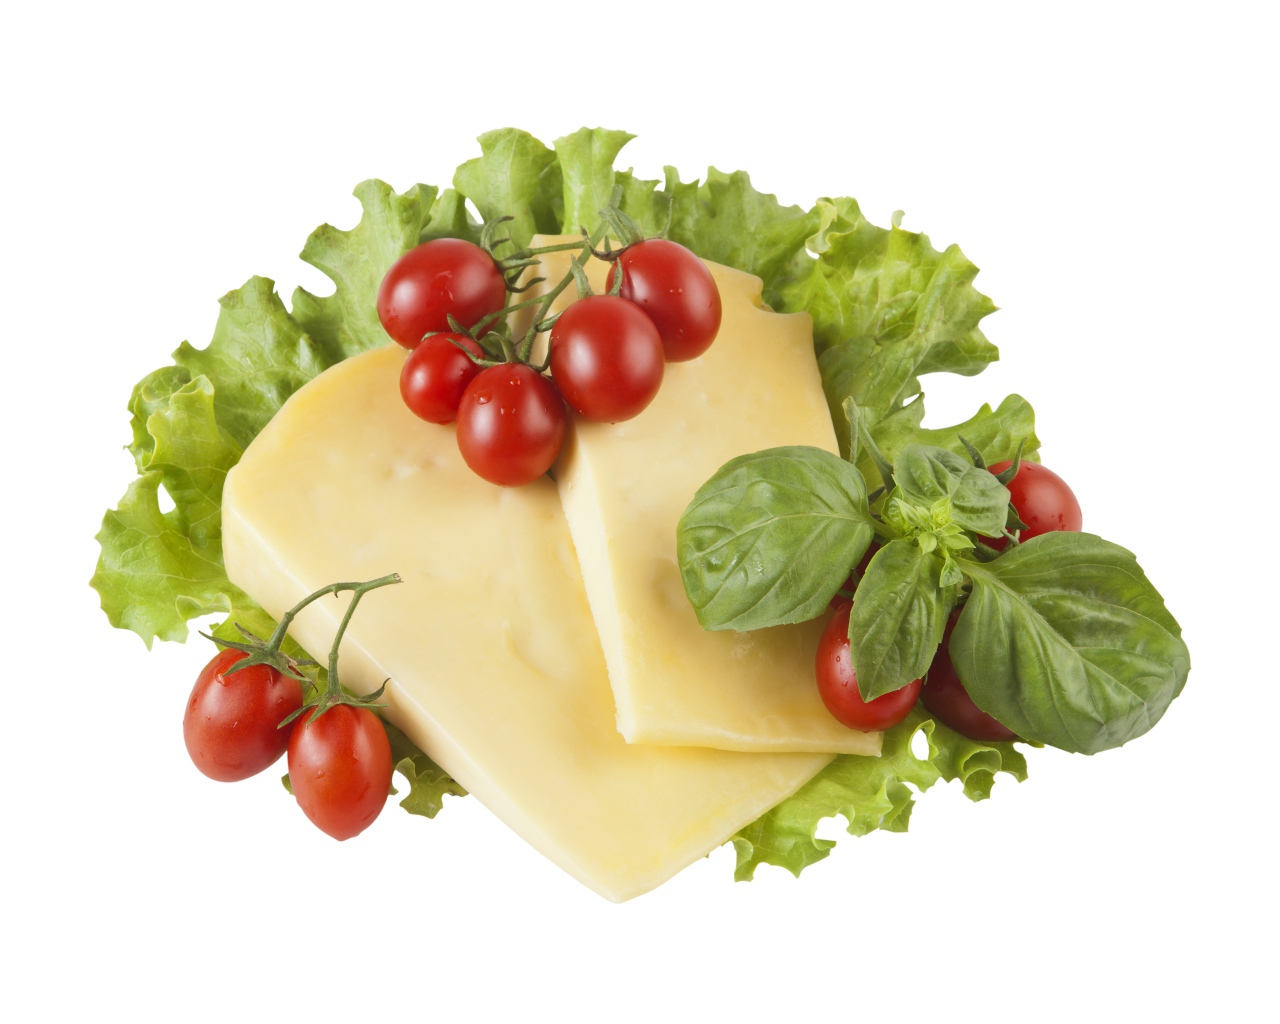 Сыр с помидорами, листьями салата и базиликом на белом фоне